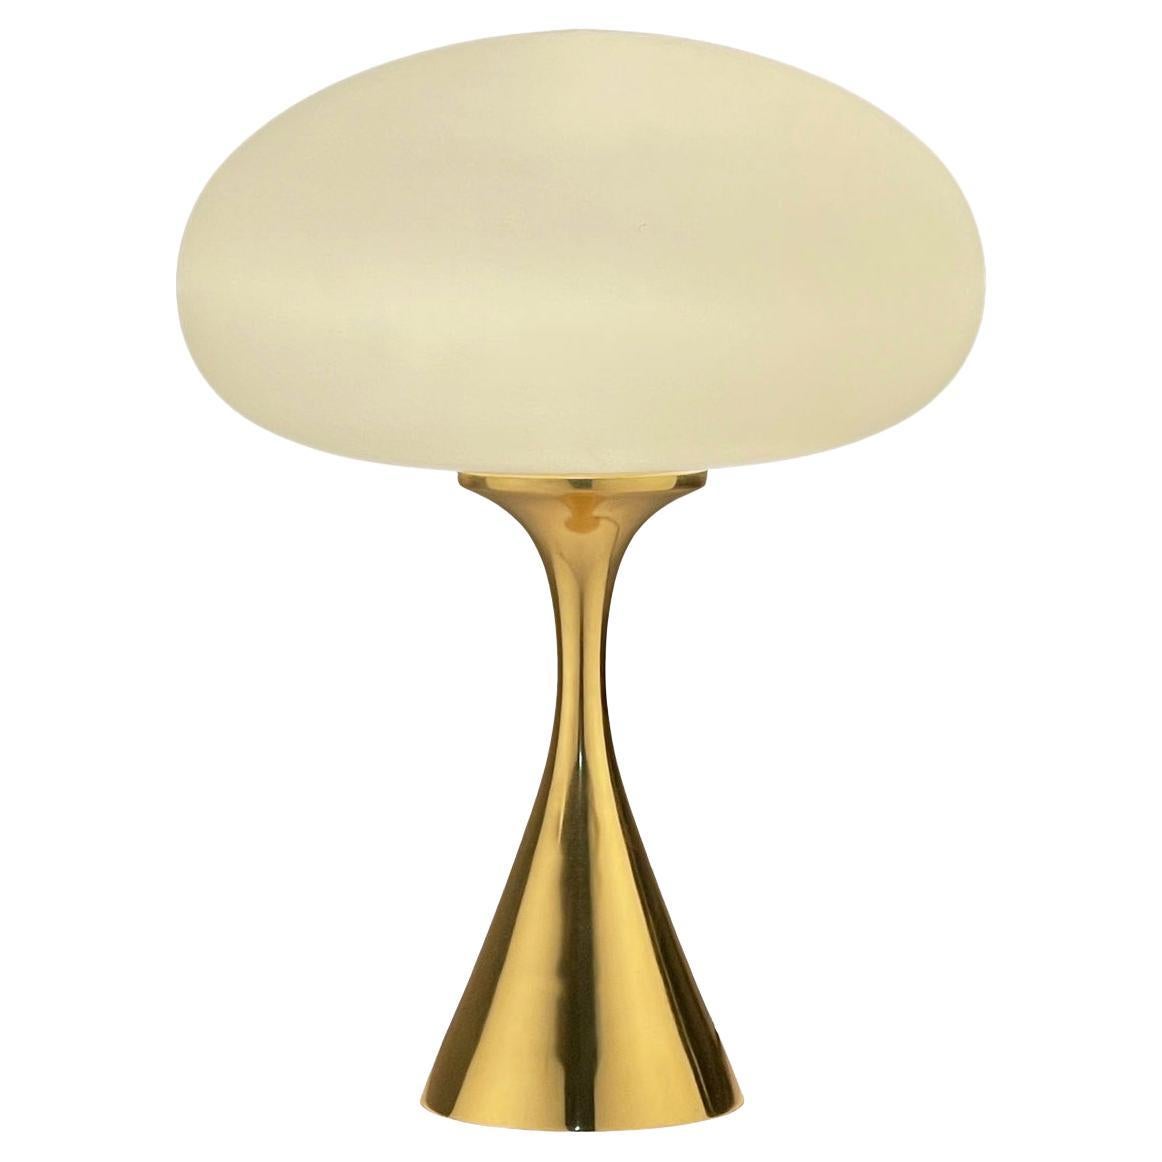 Mid-Century Modern Pilz-Tischlampe von Designline in Messing / Gold Farbe